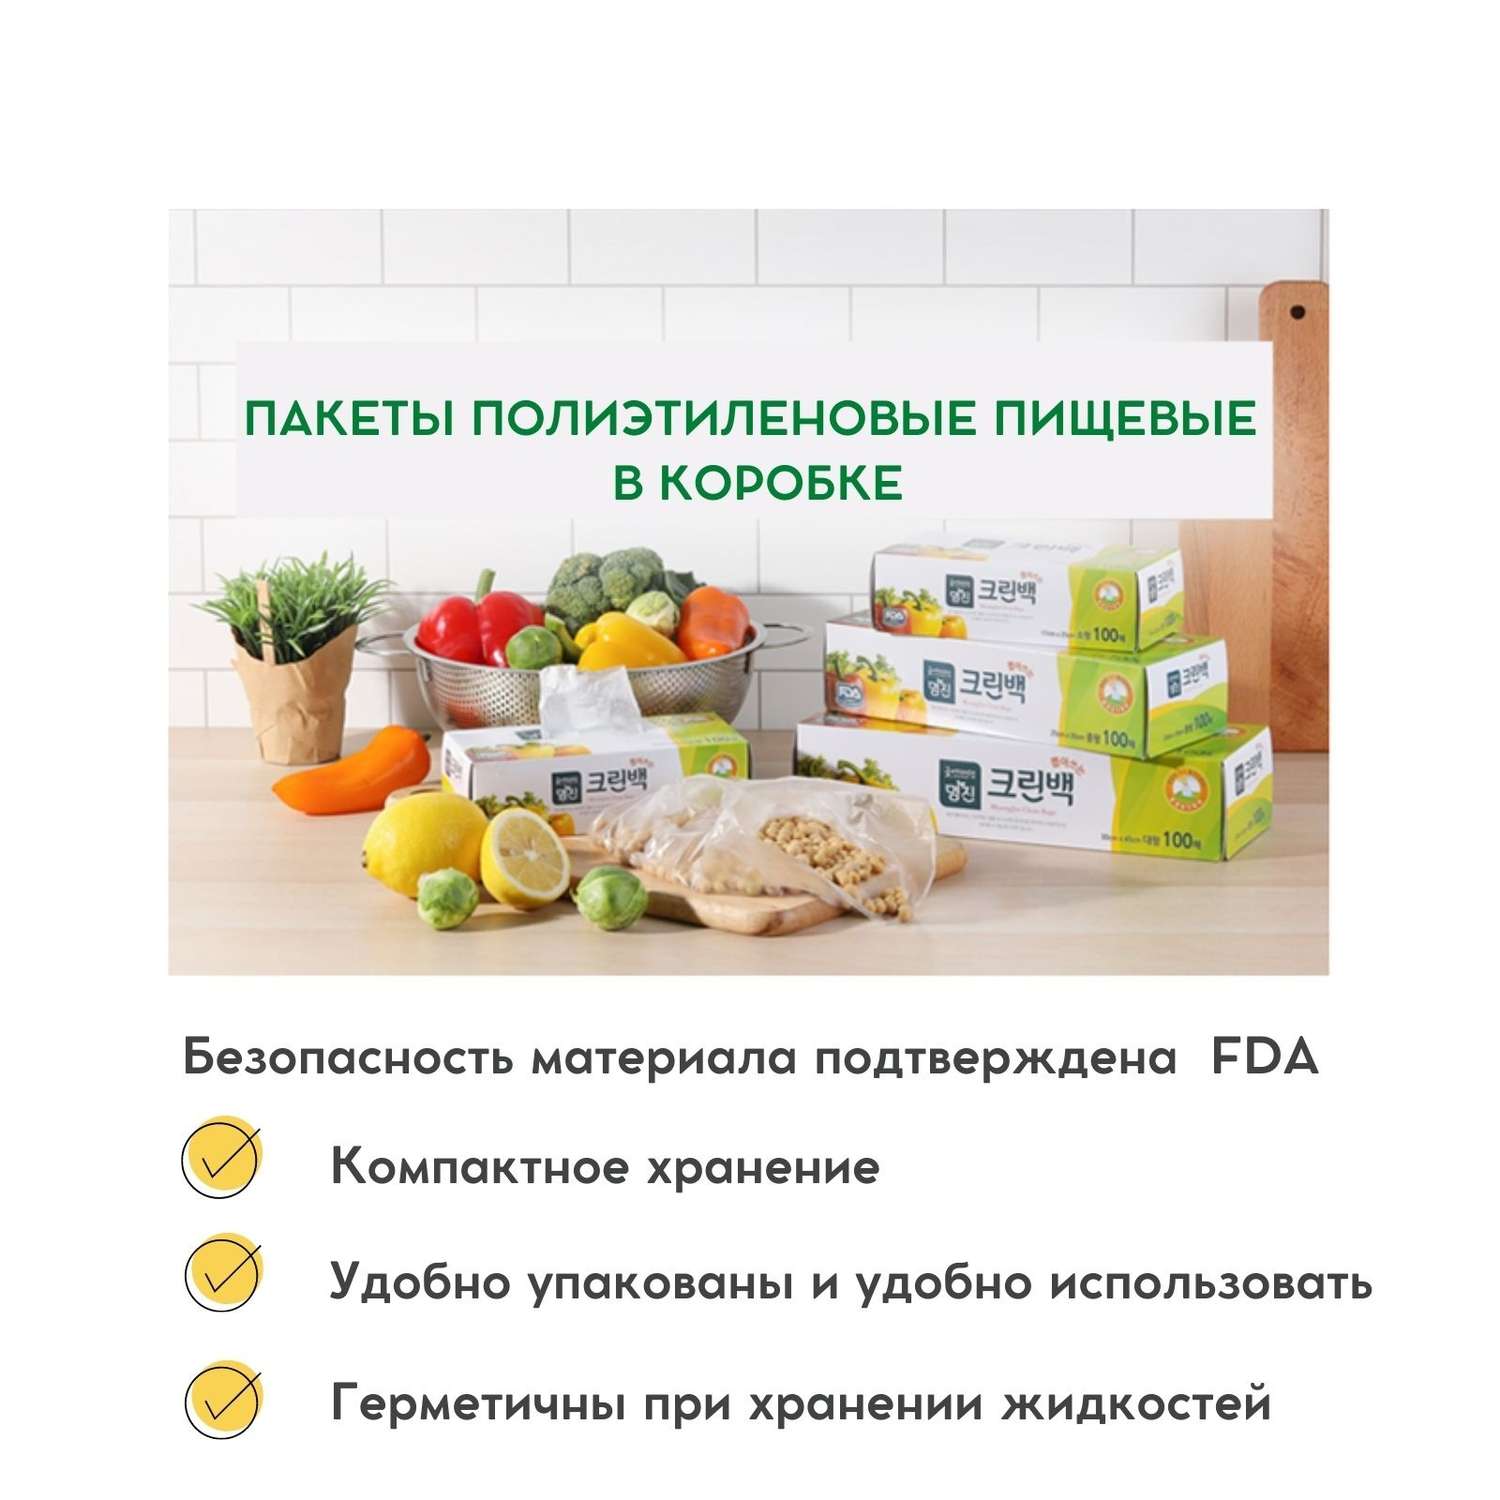 Пакеты полиэтиленовые пищевые HOME EDITION MYUNGJIN в коробке 25х35 см 100 шт - фото 2